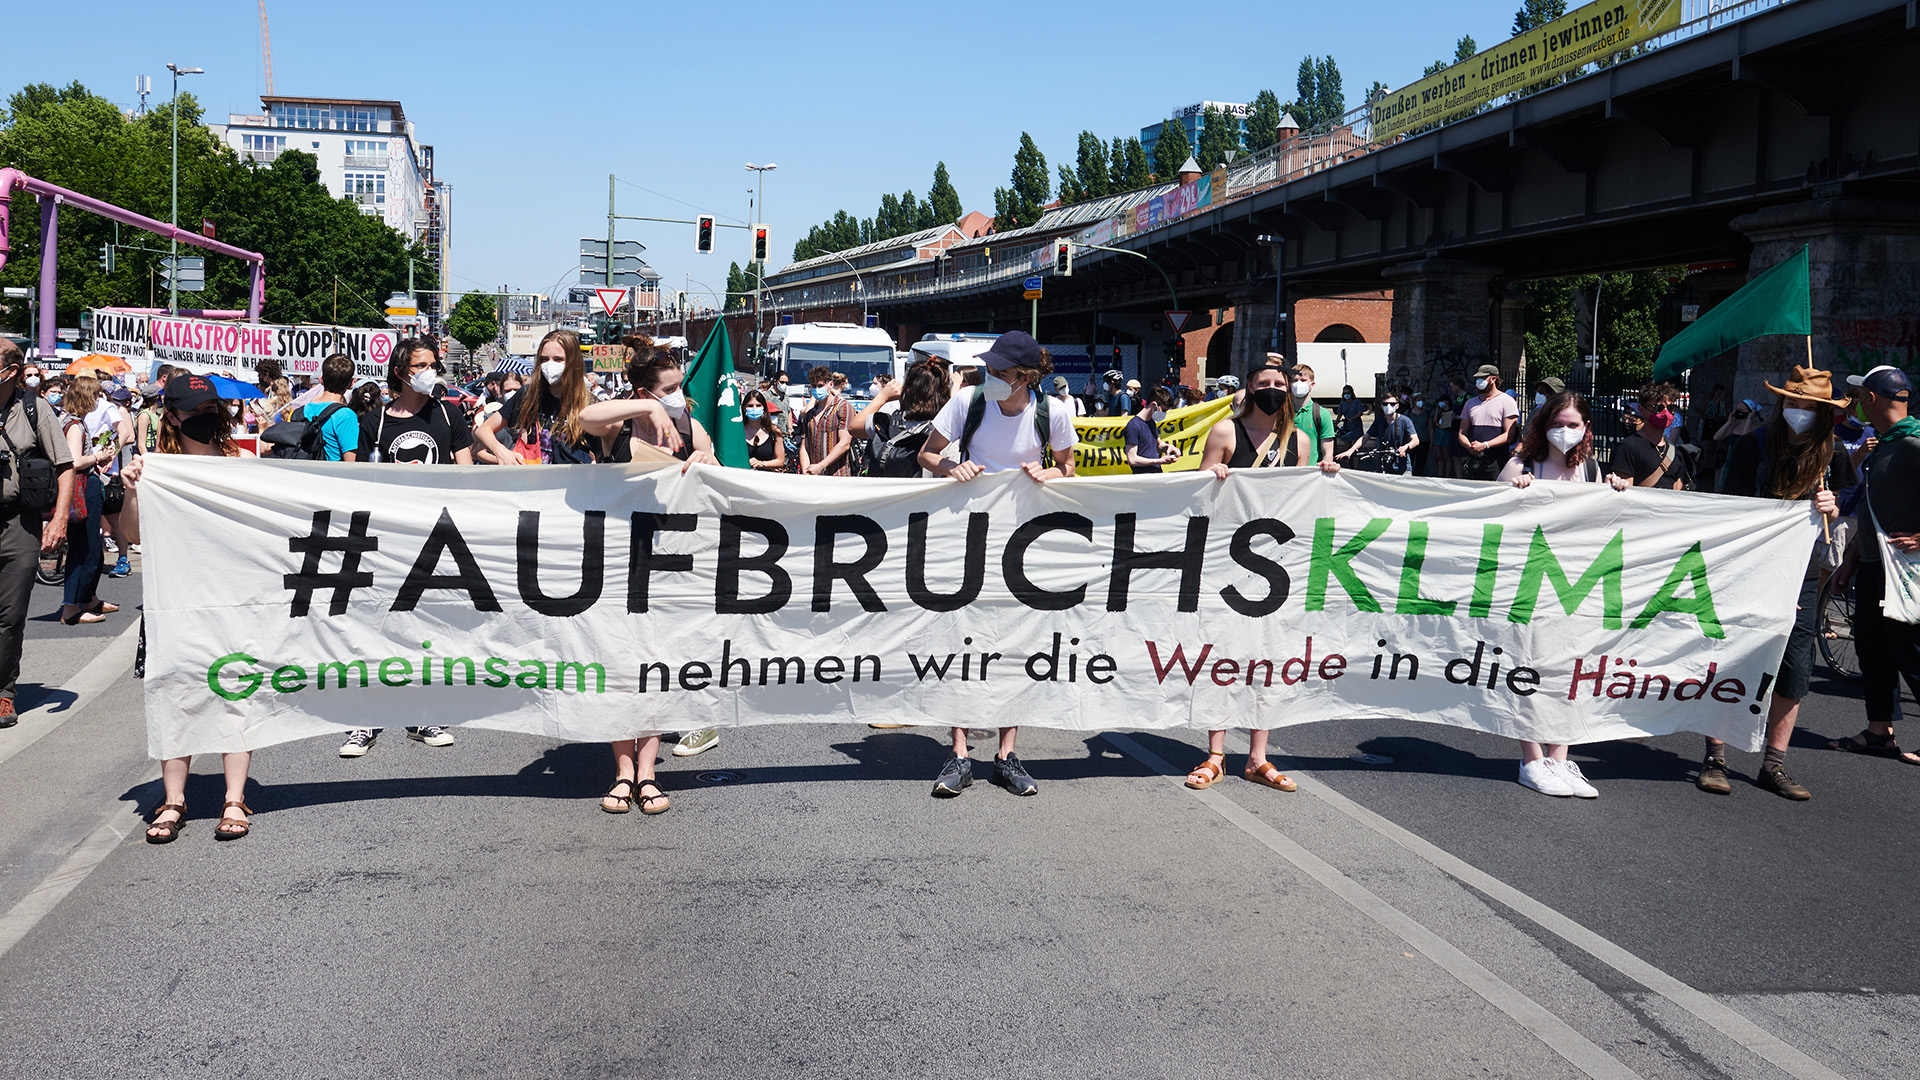 "Aufbruchsklima Gemeinsam nehmen wir die Wende in die Hände!" steht auf dem Transparent der Demonstranten, die über die Oberbaumbrücke gehen. | dpa